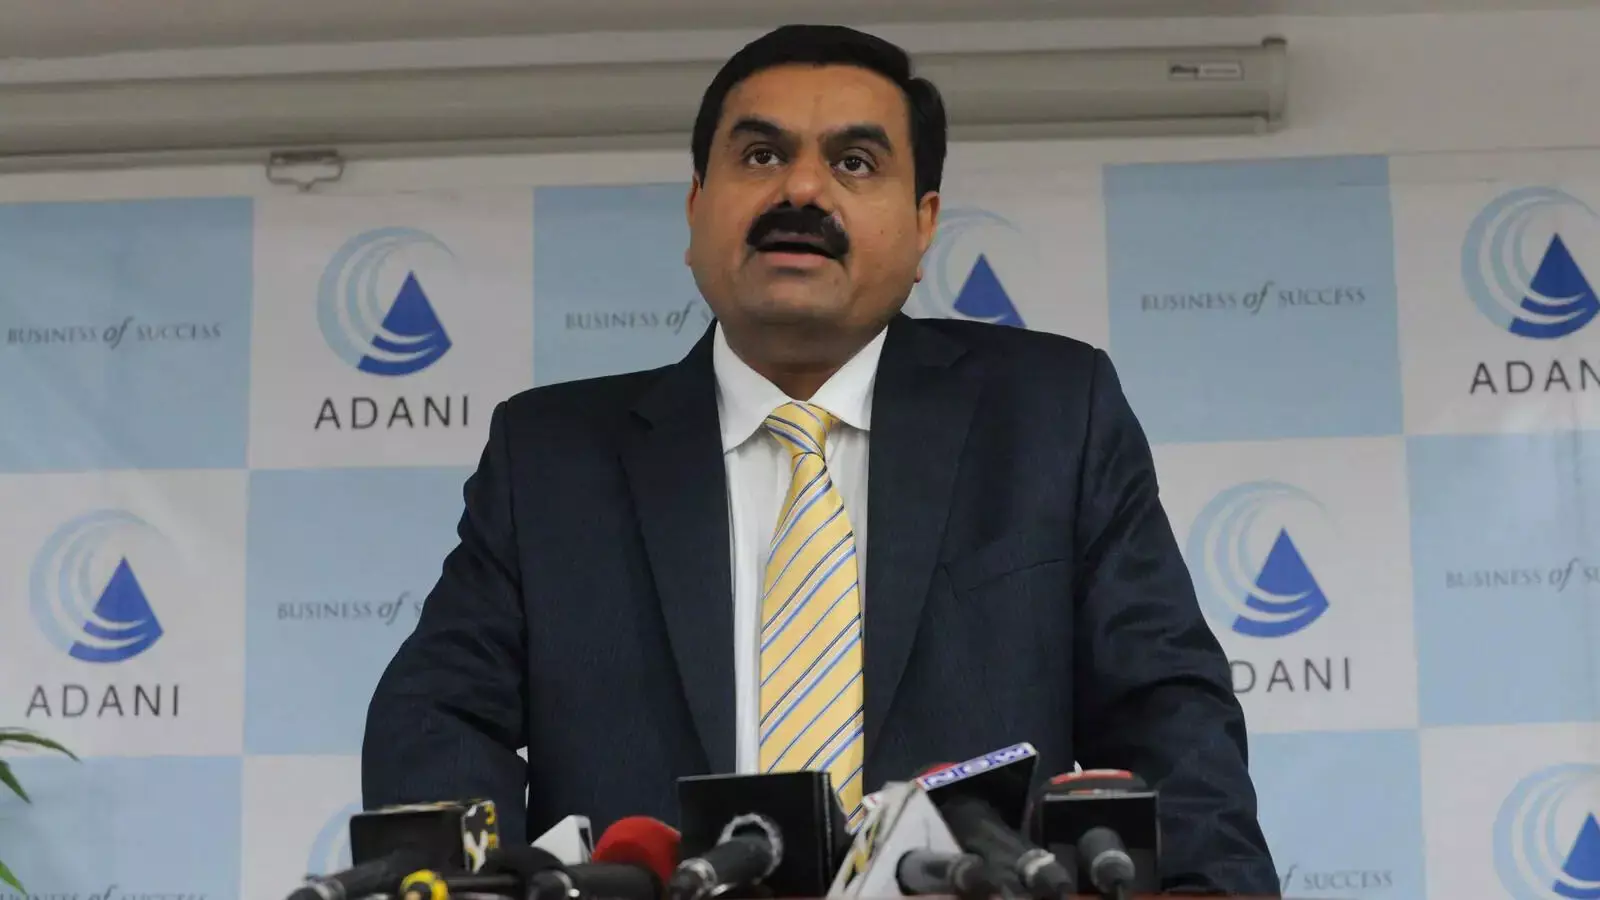 Business : गौतम अडानी की कंपनी को मिली बड़ी मंजूरी